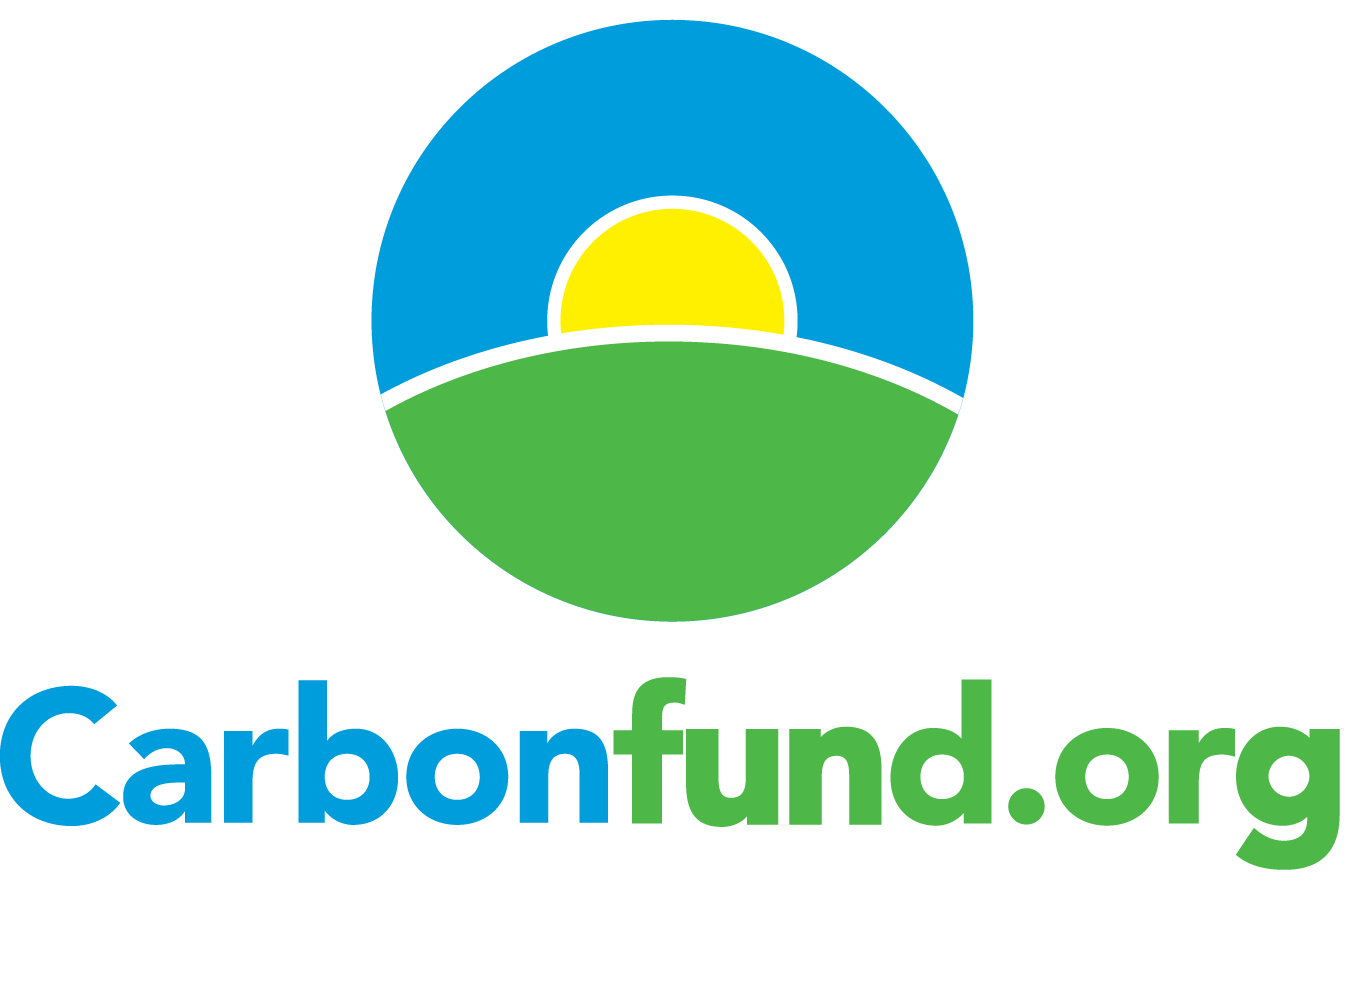 carbonfund